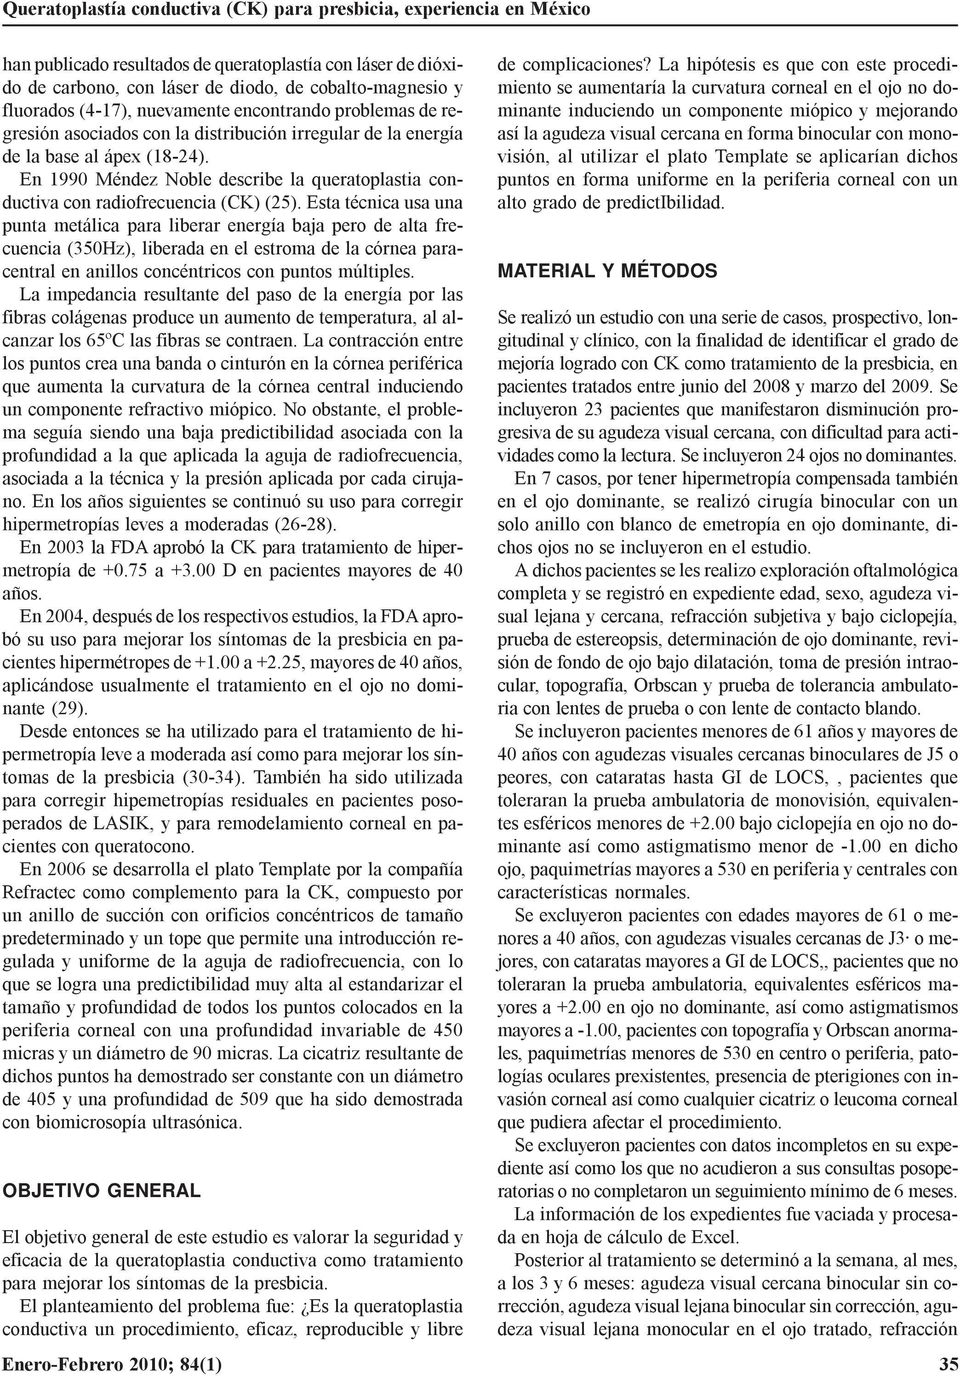 En 1990 Méndez Noble describe la queratoplastia conductiva con radiofrecuencia (CK) (25).